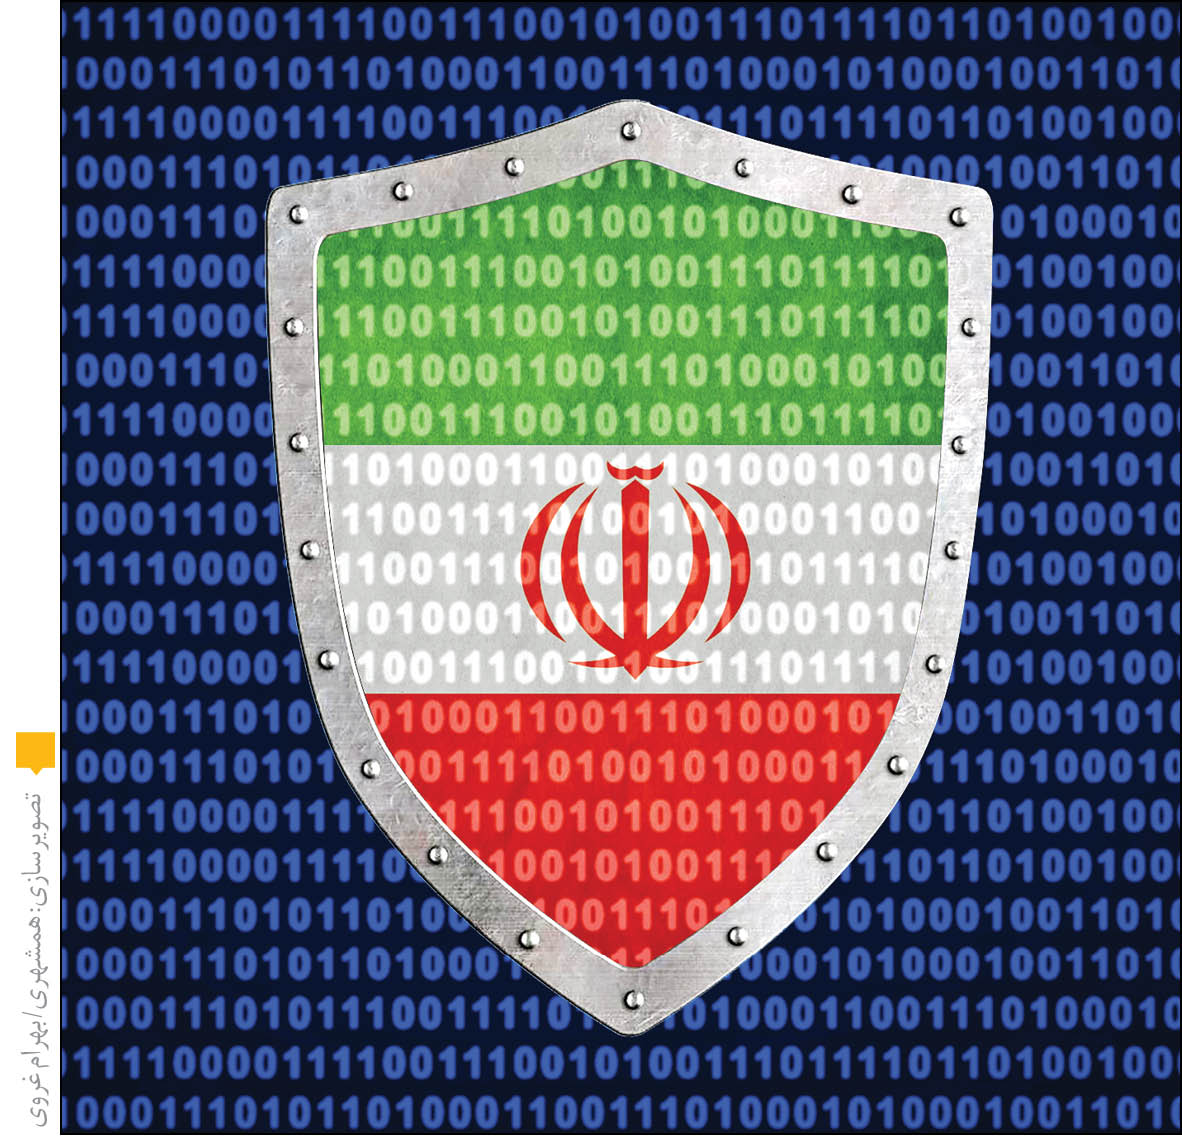 دیوار دفاعی ایران در برابر حملات سایبری